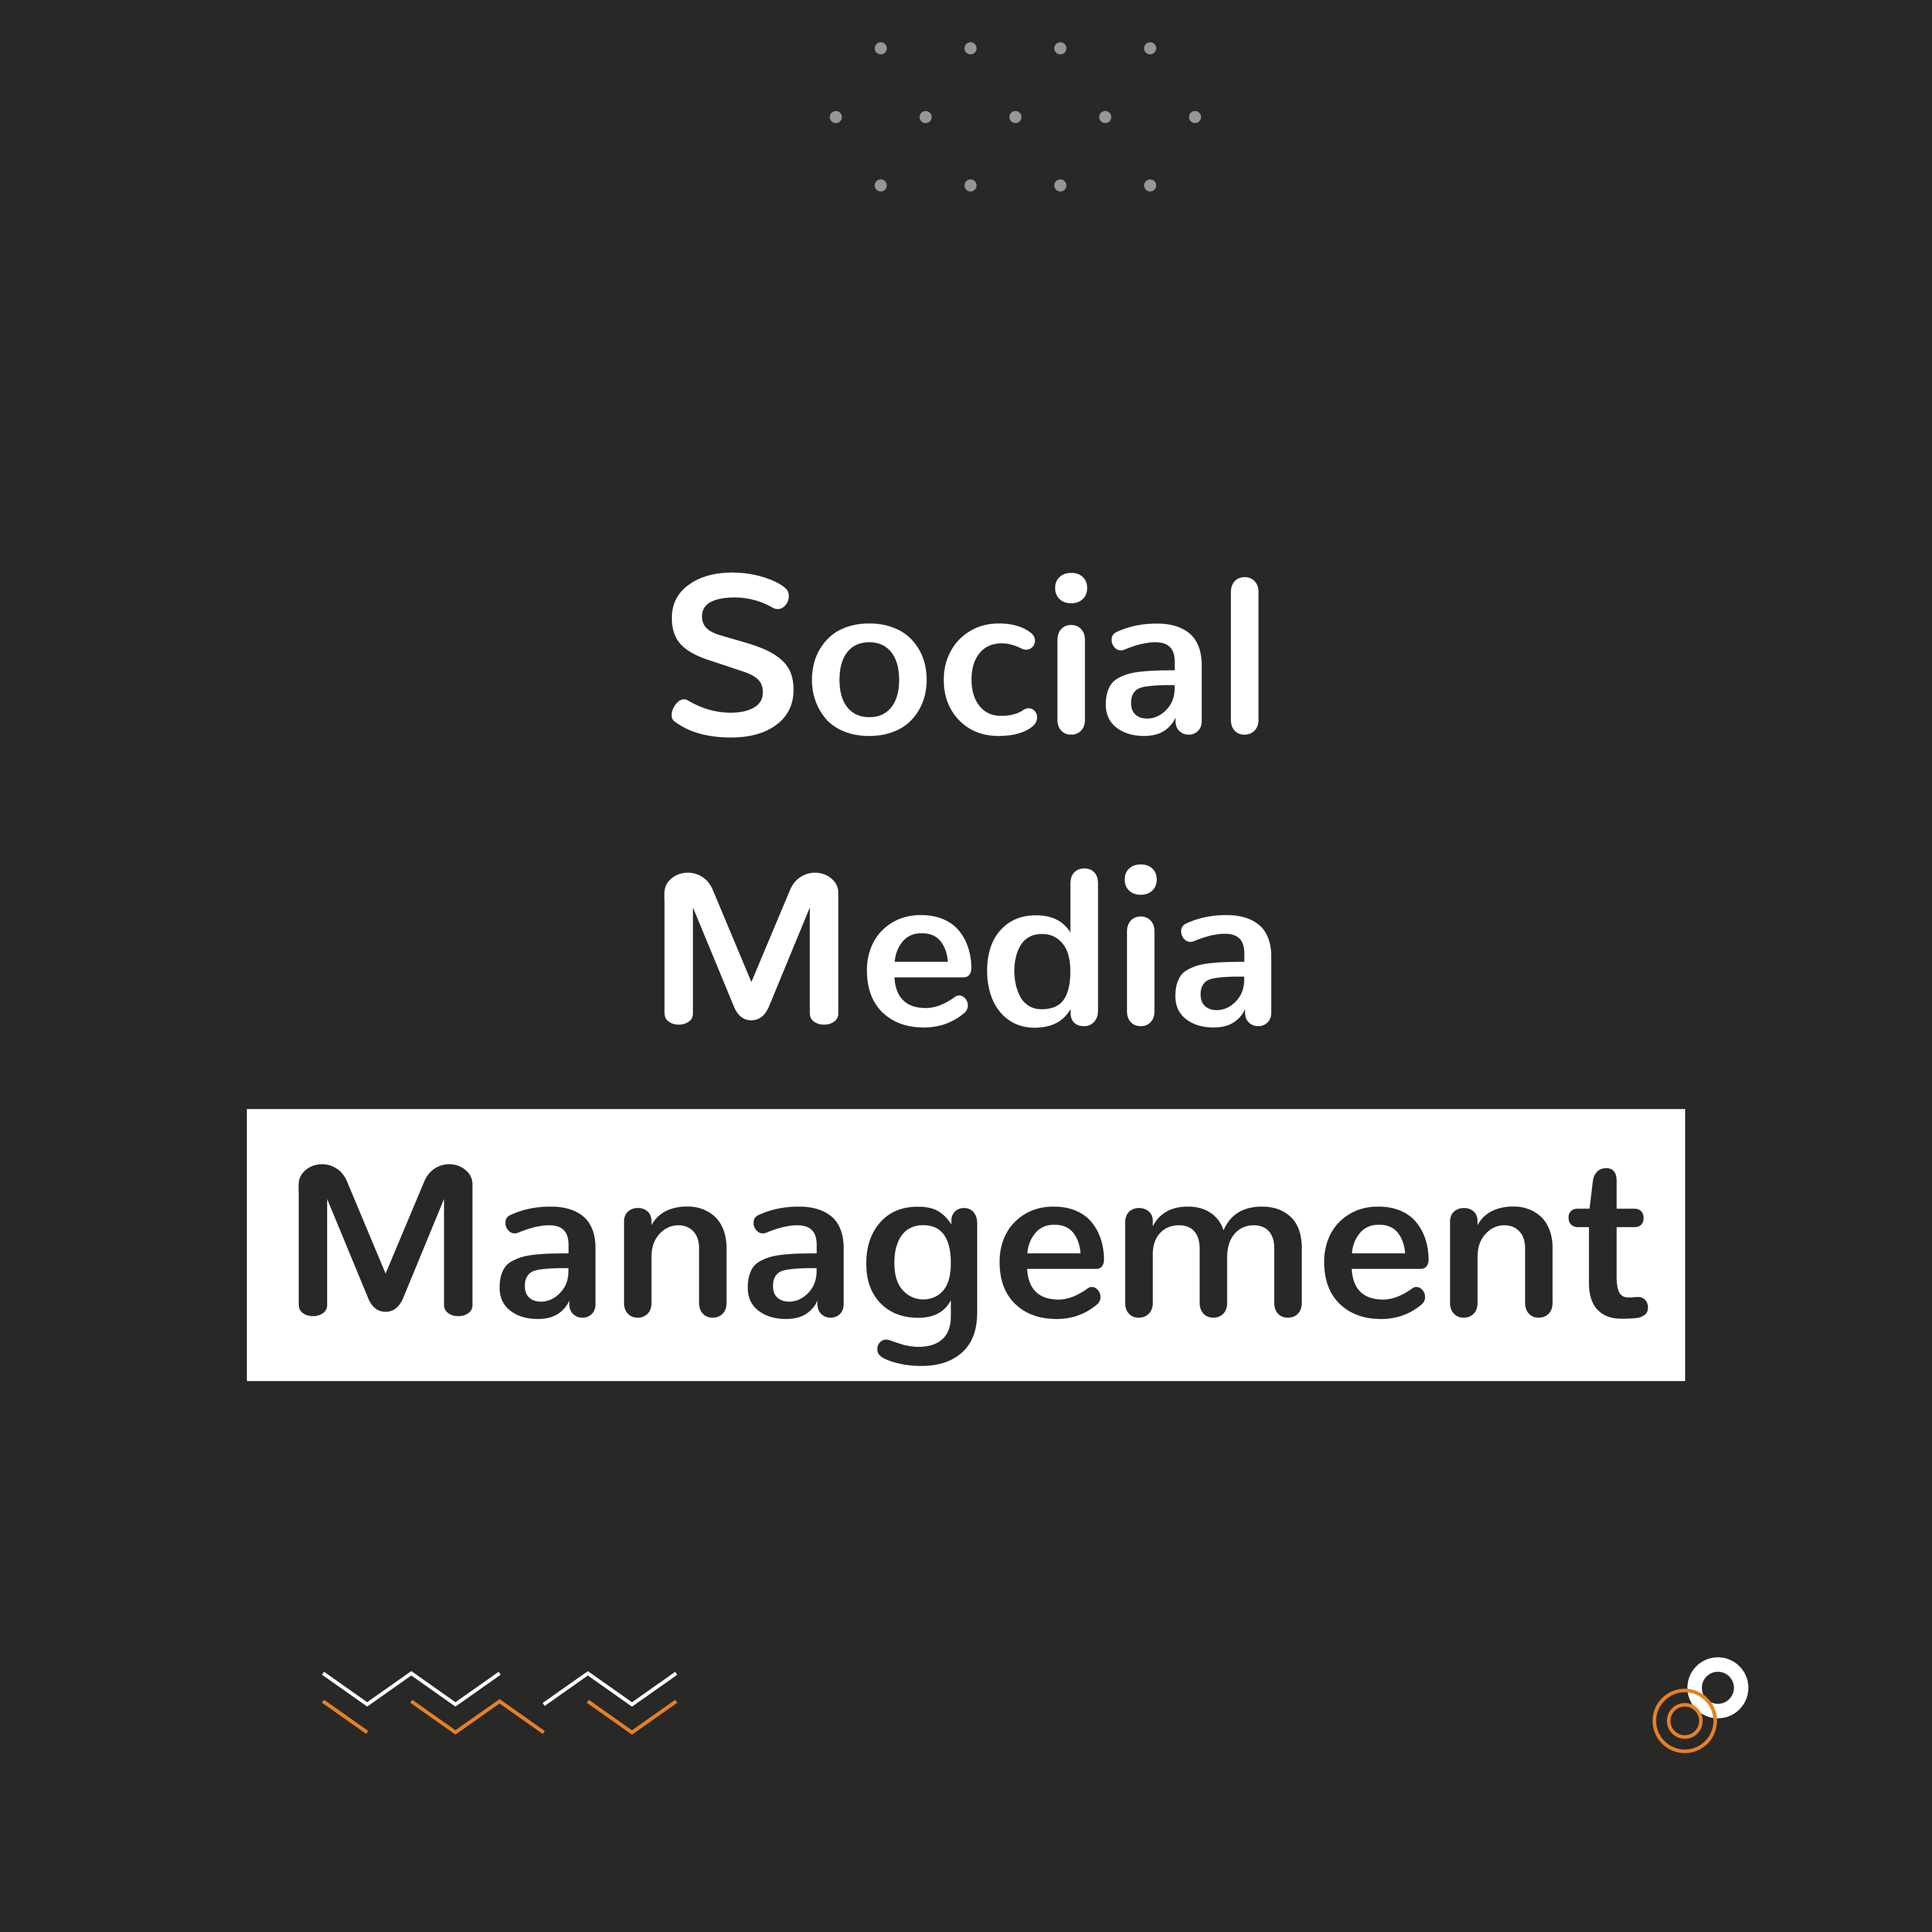 Social Media Management "SMM"